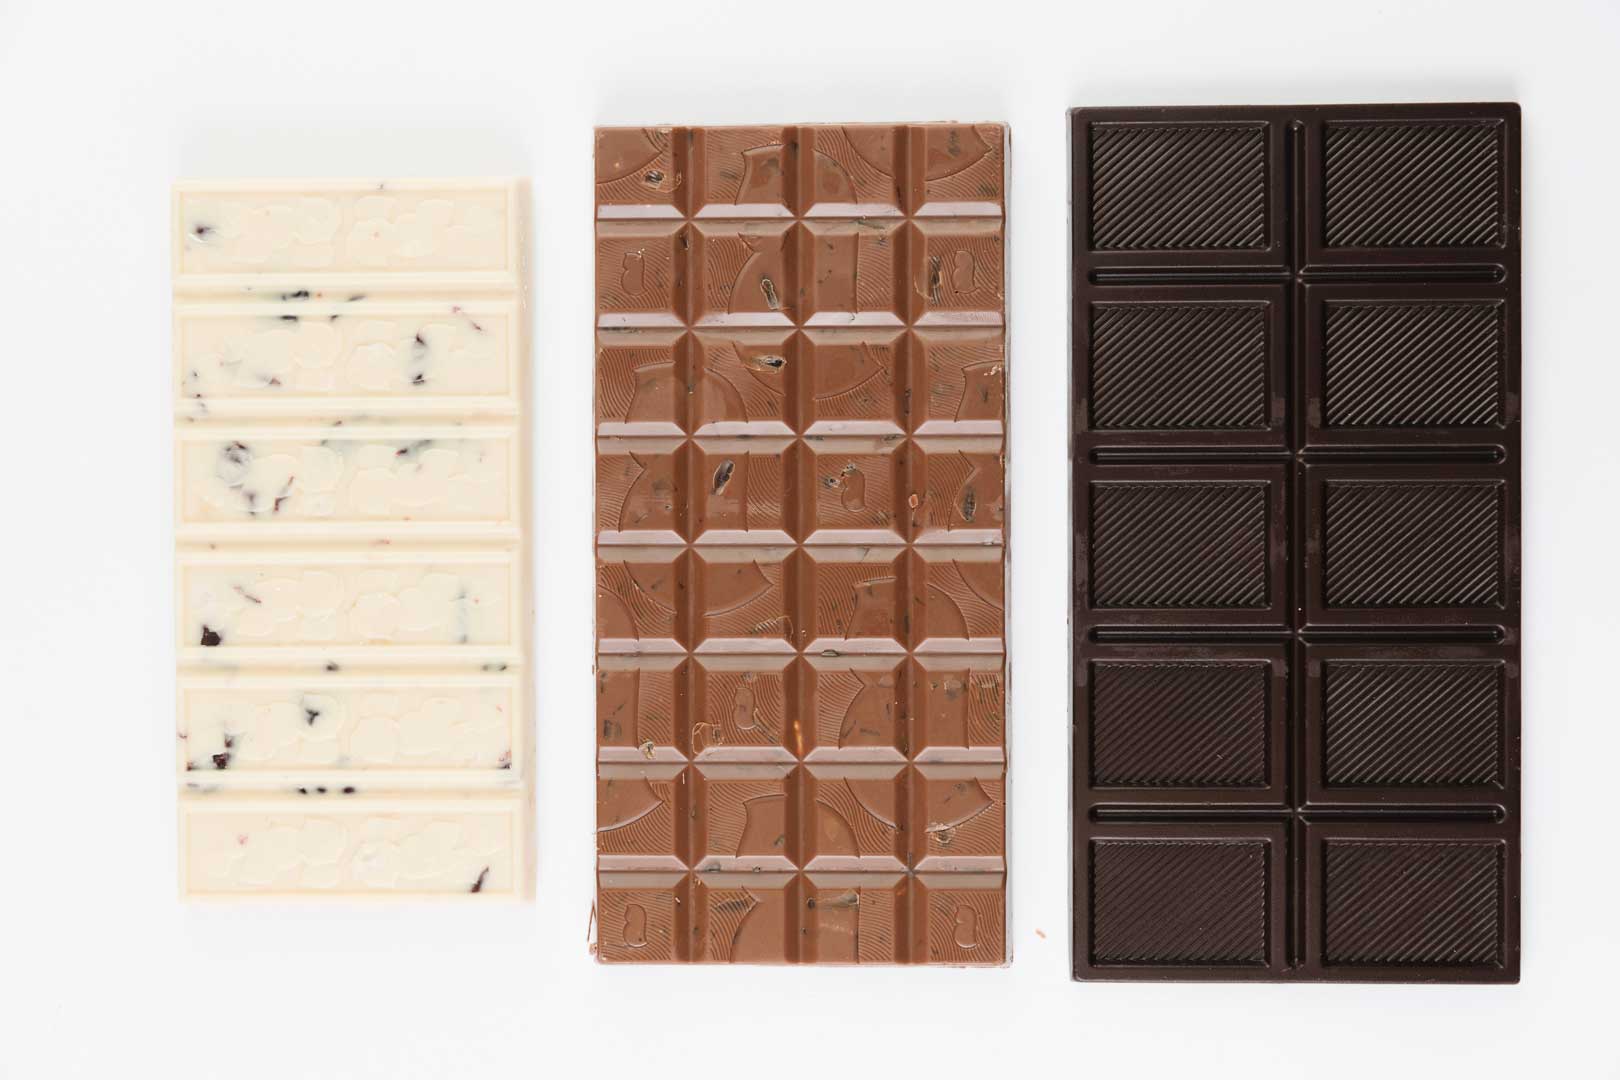 شکلات با درصد های مختلف پودر کاکائو